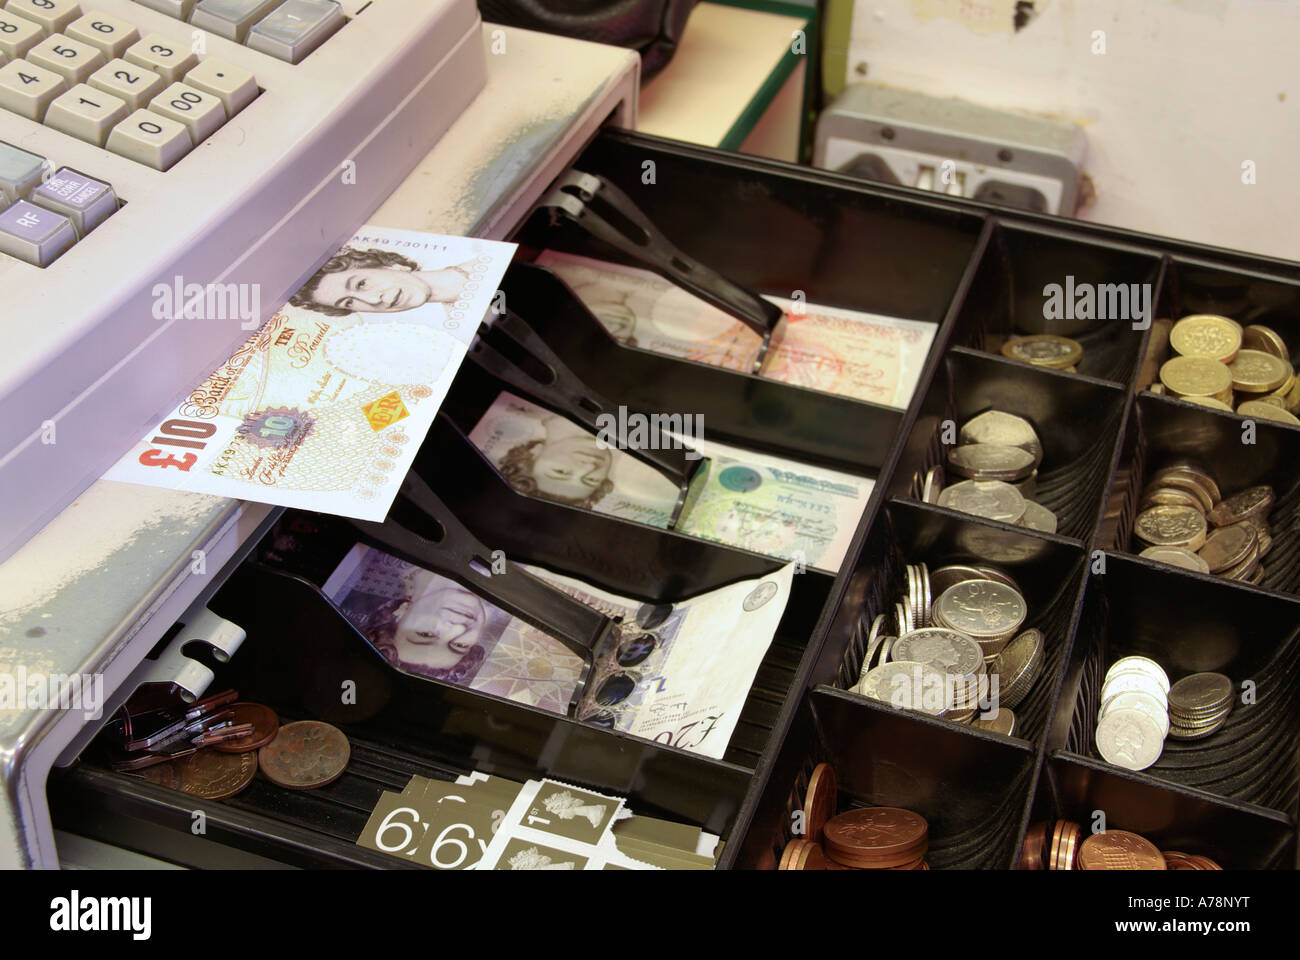 Ouverture de la boutique dans les locaux commerciaux montrant £10 notes sur l'étagère incluant £20 notes et autres offres légales Angleterre Royaume-Uni Banque D'Images